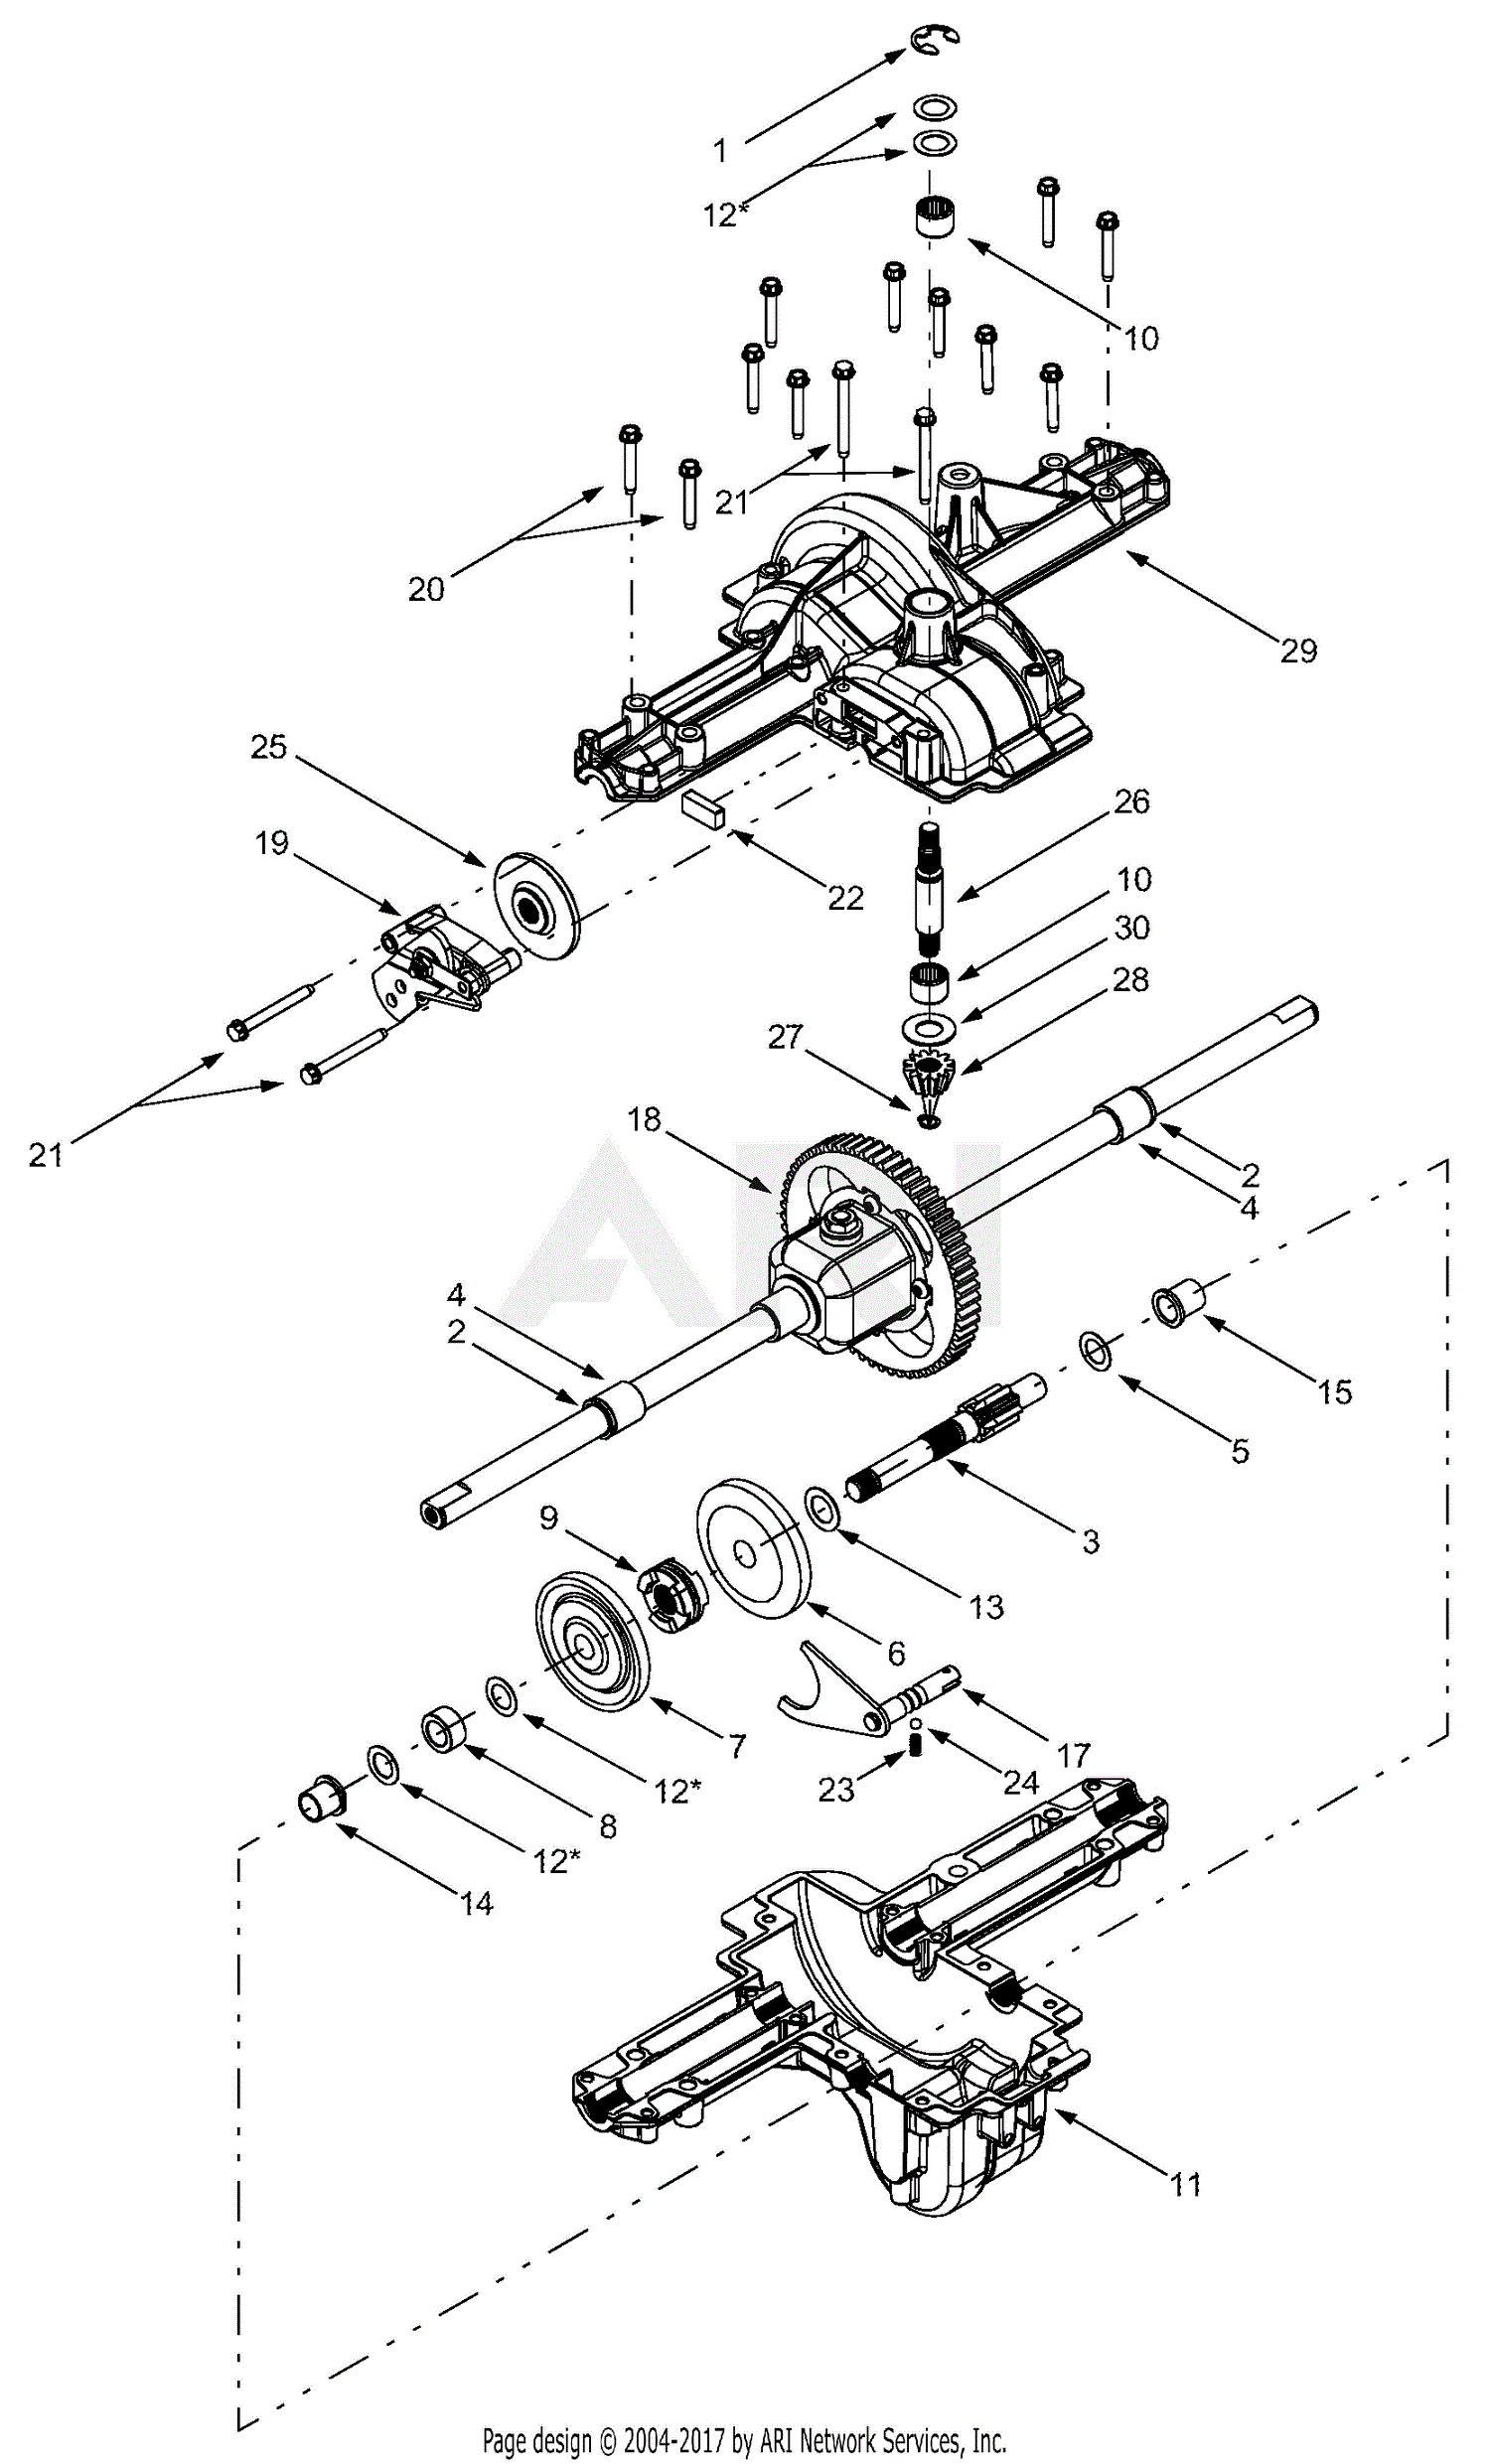 27 Farmall H Carburetor Diagram - Wiring Database 2020